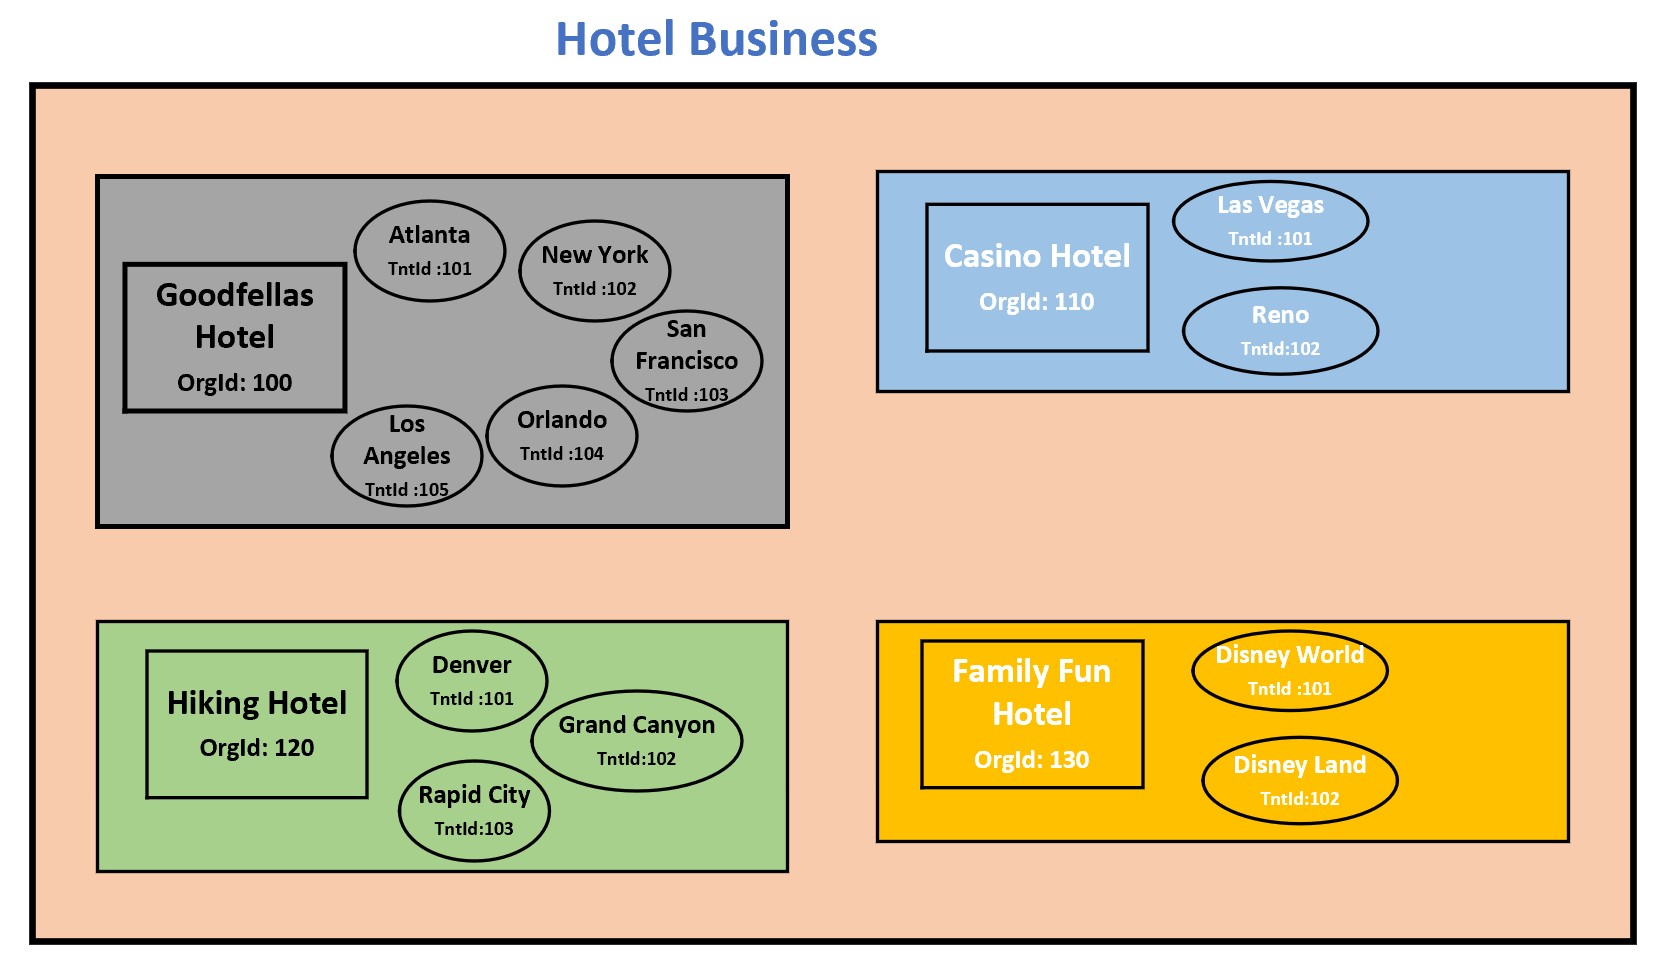 MultiTenant_Hotel_Business_Model.jpg